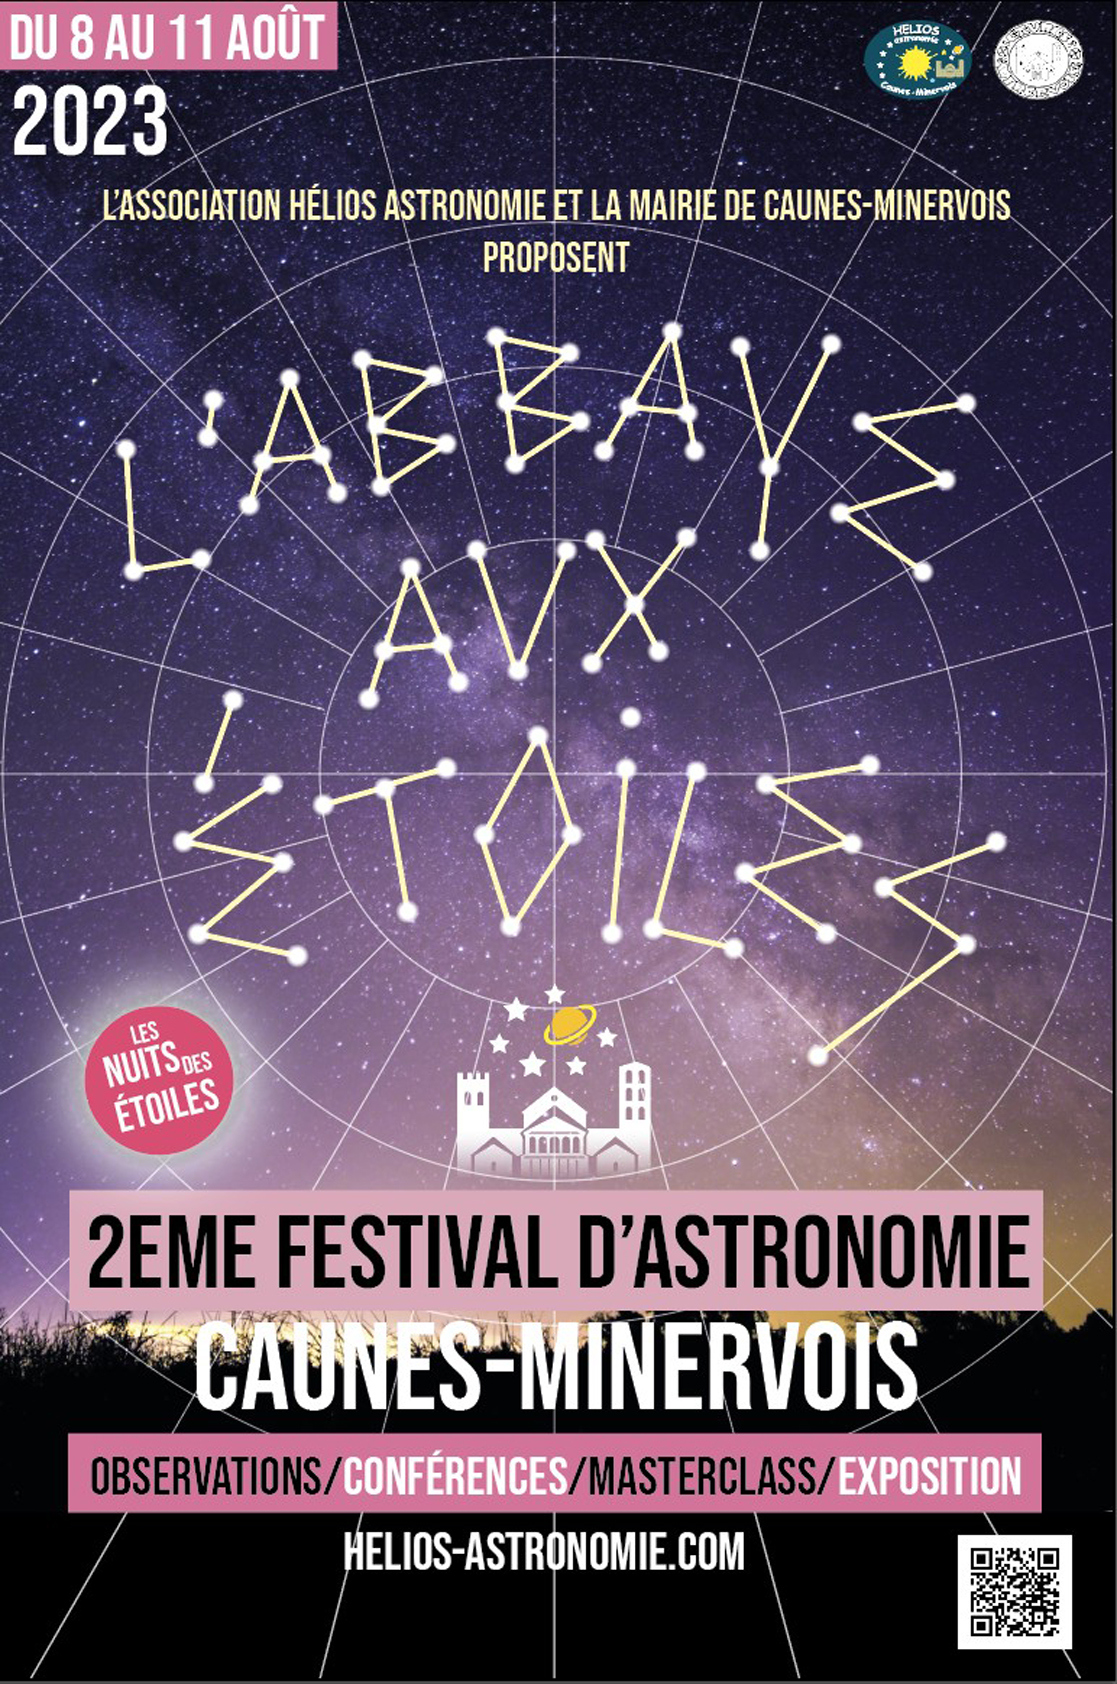 "L'ABBAYE AUX ÉTOILES" Deuxiéme Festival d'Astronomie de CAUNES-MINERVOIS